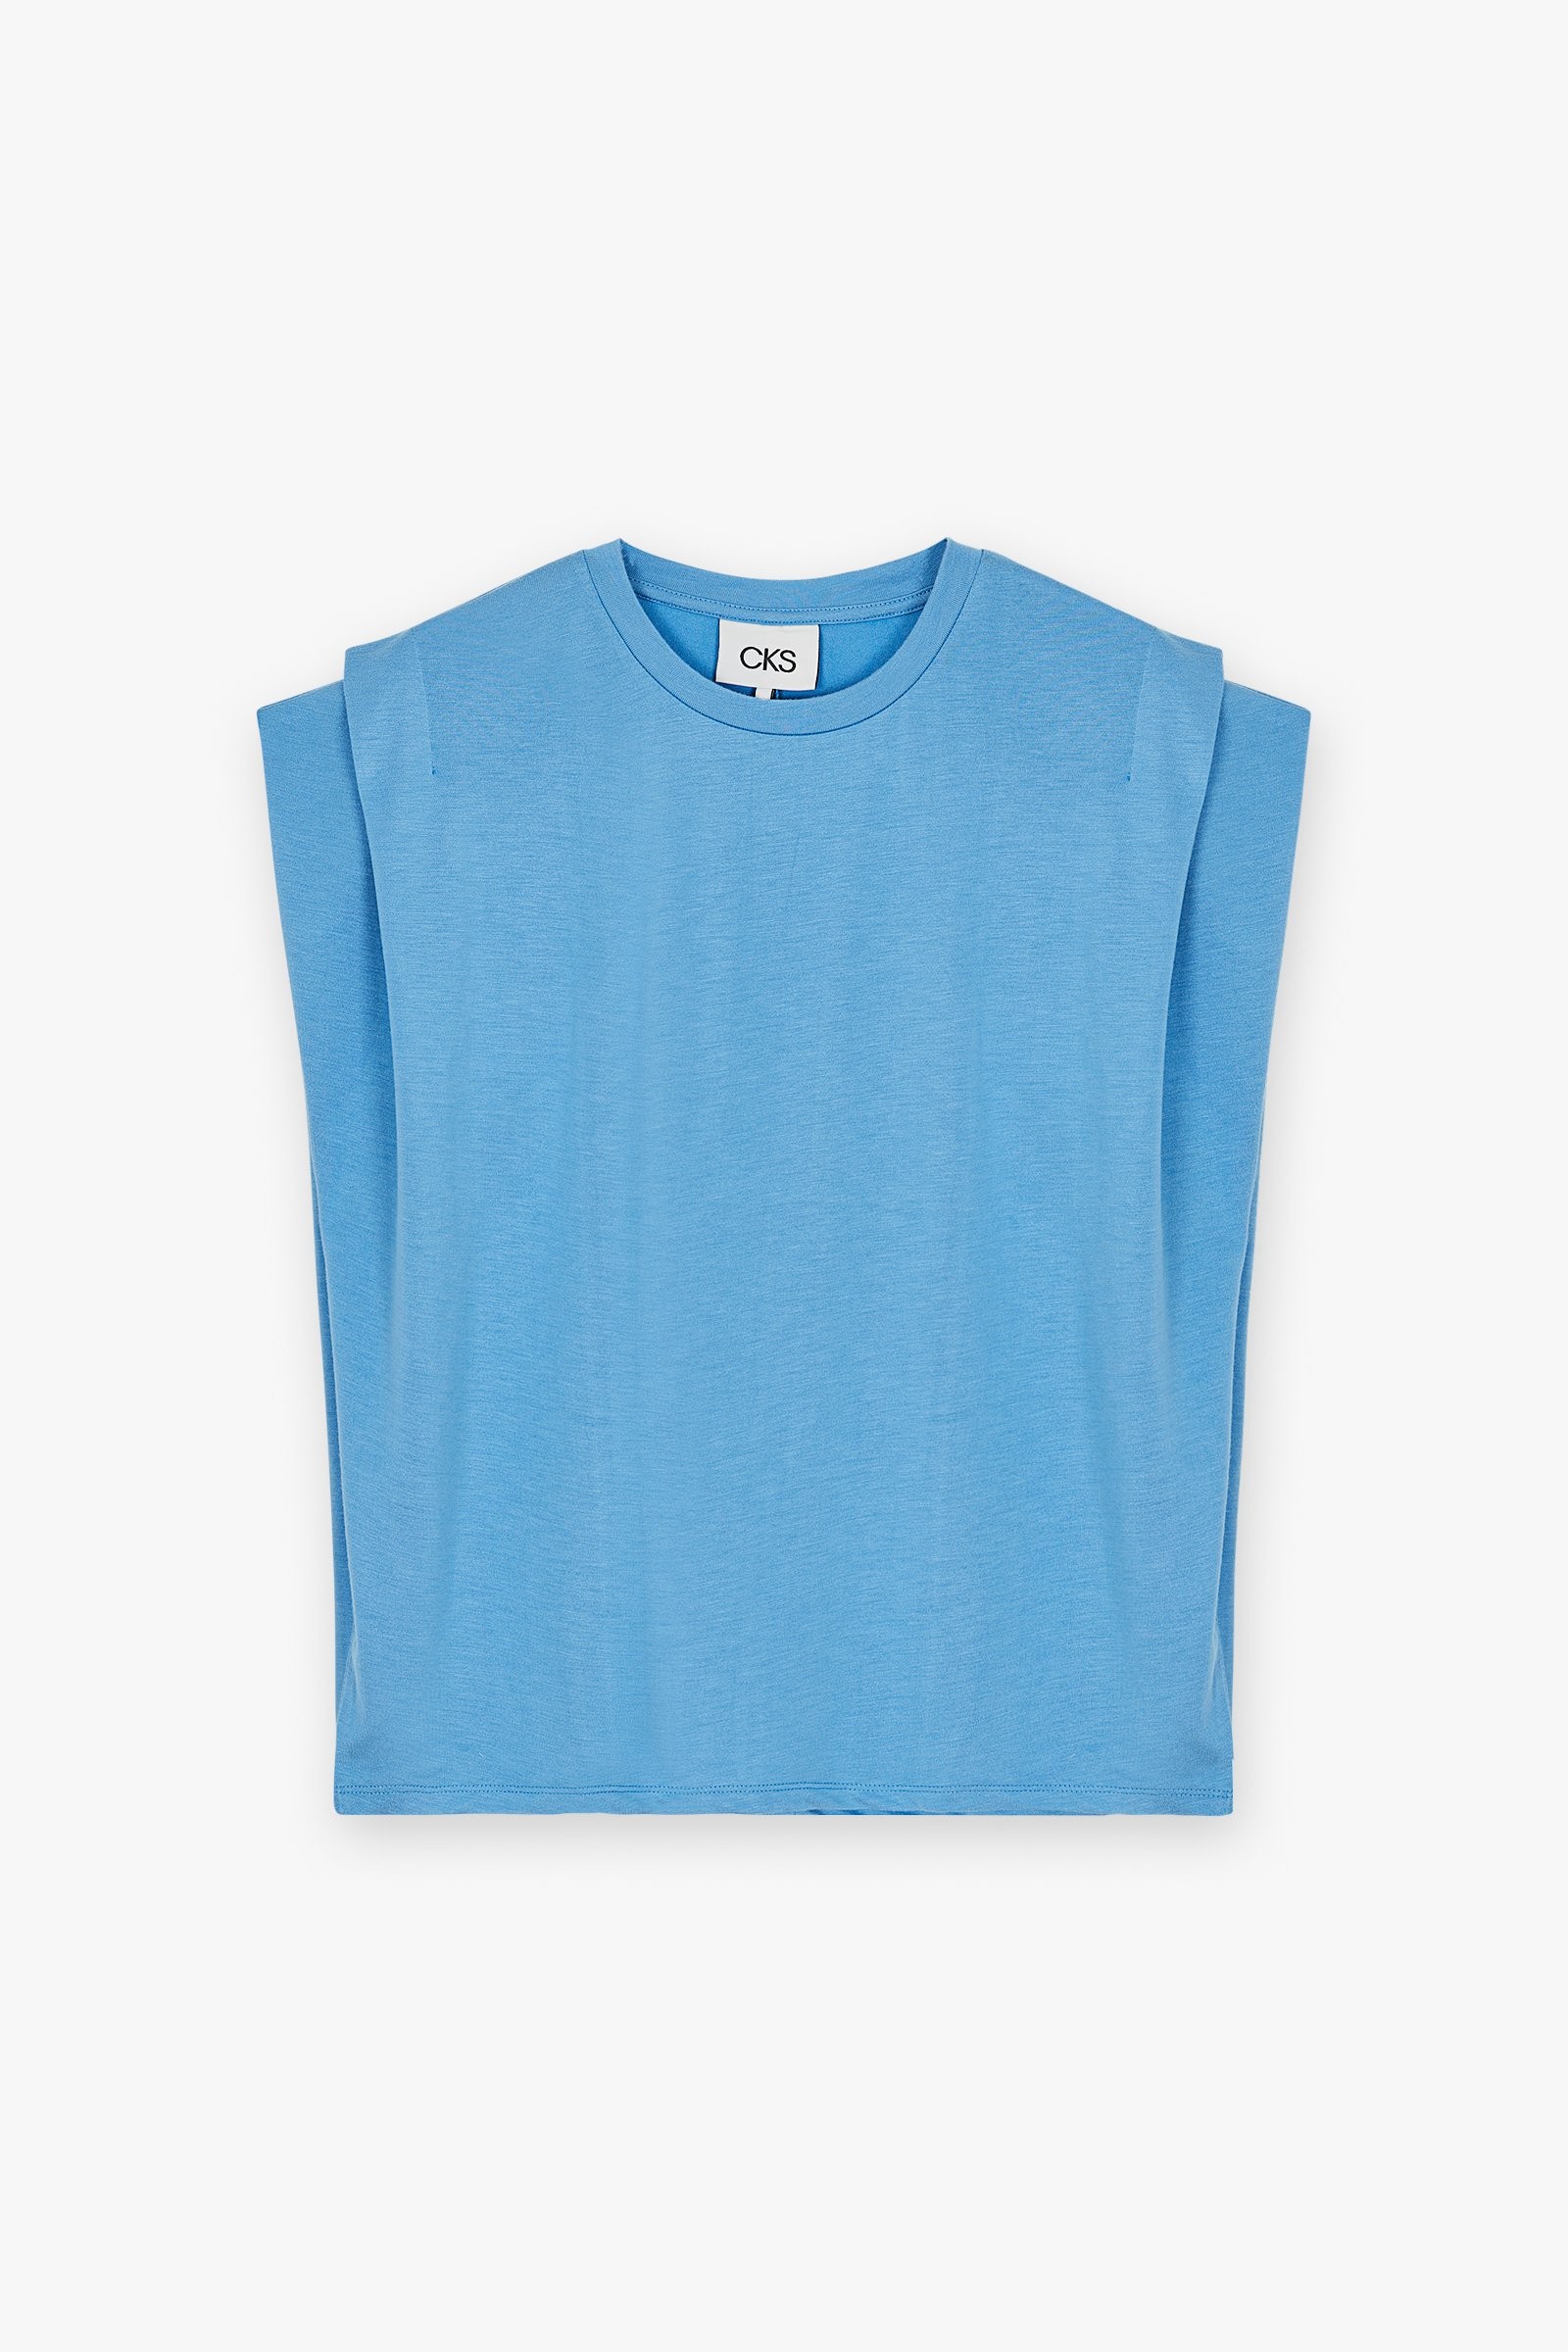 CKS Dames - PAMINA - t-shirt korte mouwen - blauw